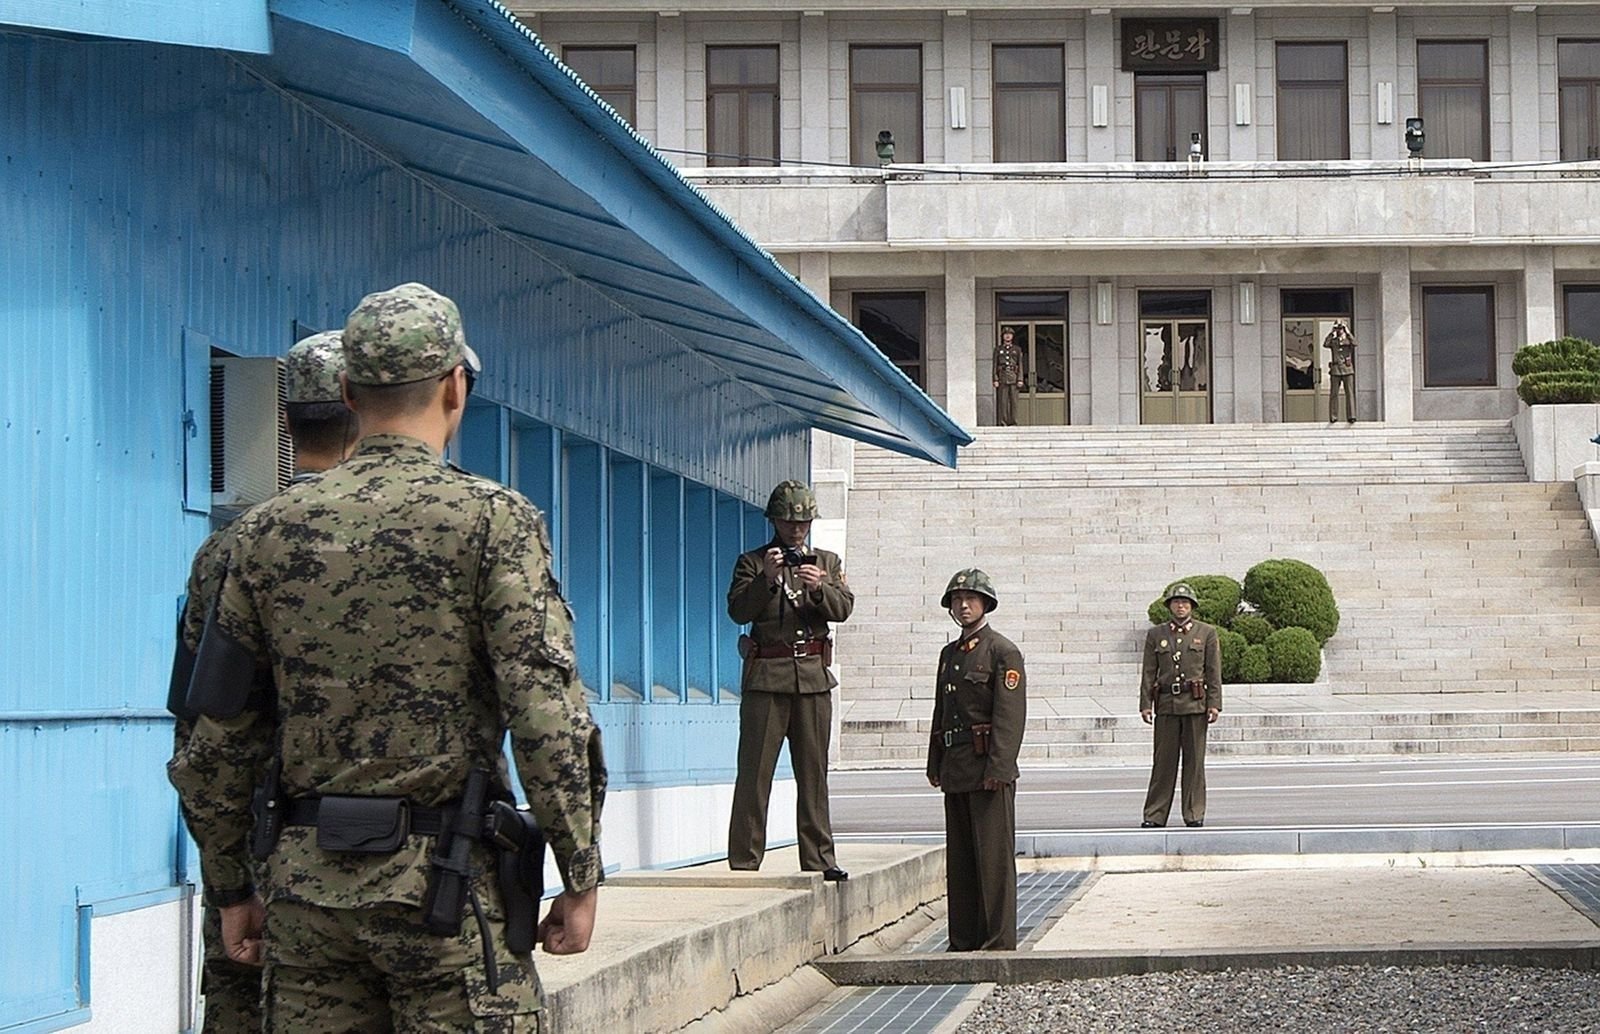 Умард, Өмнөд Солонгосын хилийн цэргүүд харилцан гал нээжээ